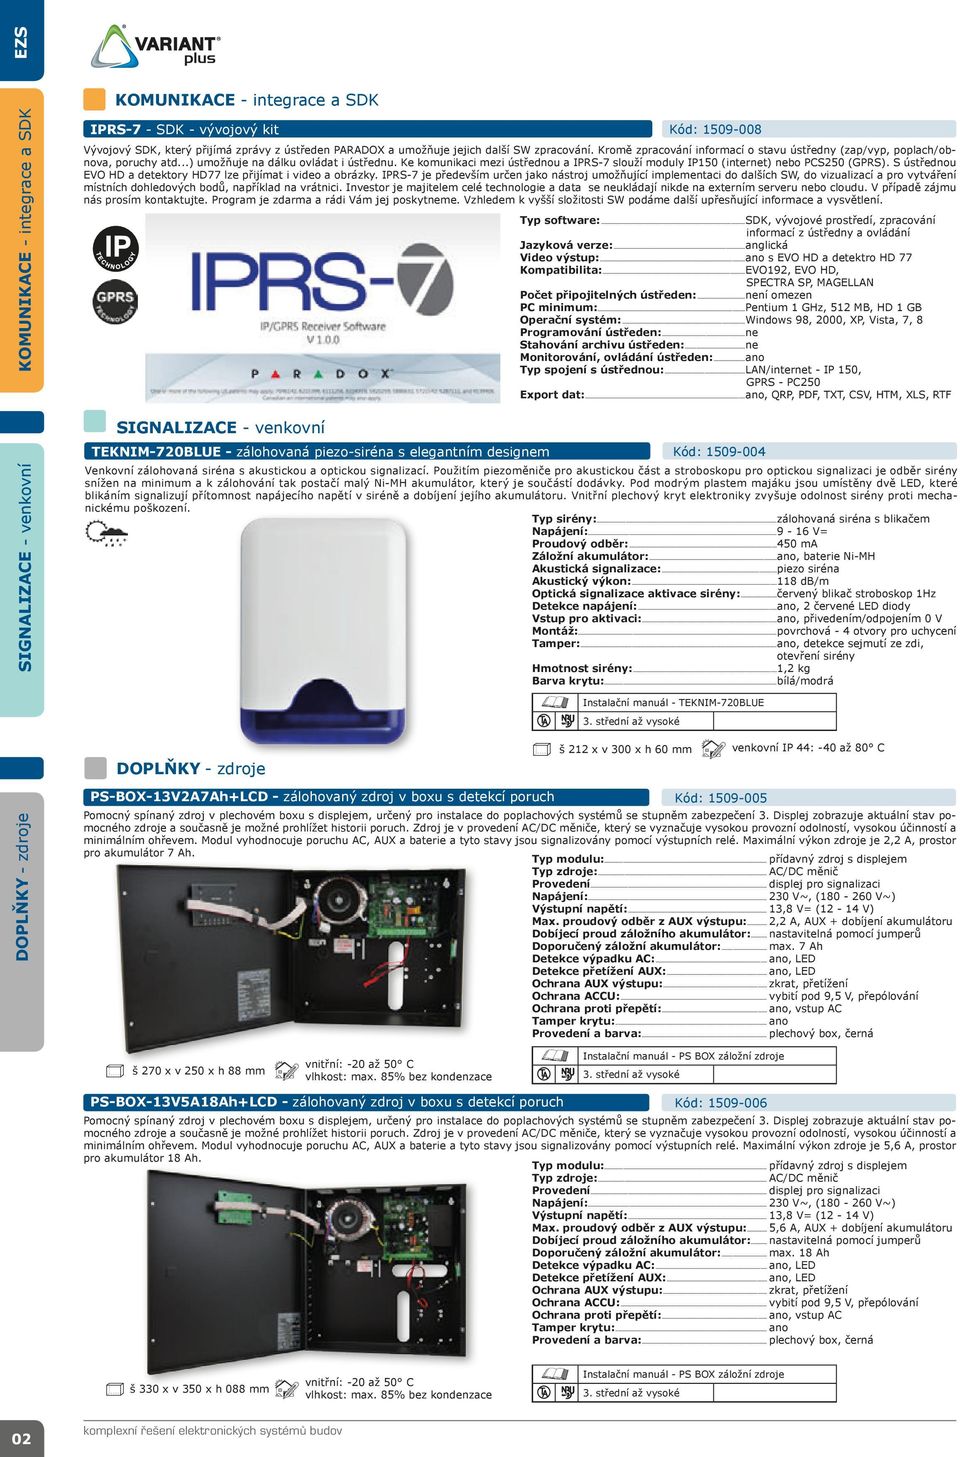 Ke komunikaci mezi ústřednou a IPRS-7 slouží moduly IP150 (internet) nebo PCS250 (GPRS). S ústřednou EVO HD a detektory HD77 lze přijímat i video a obrázky.